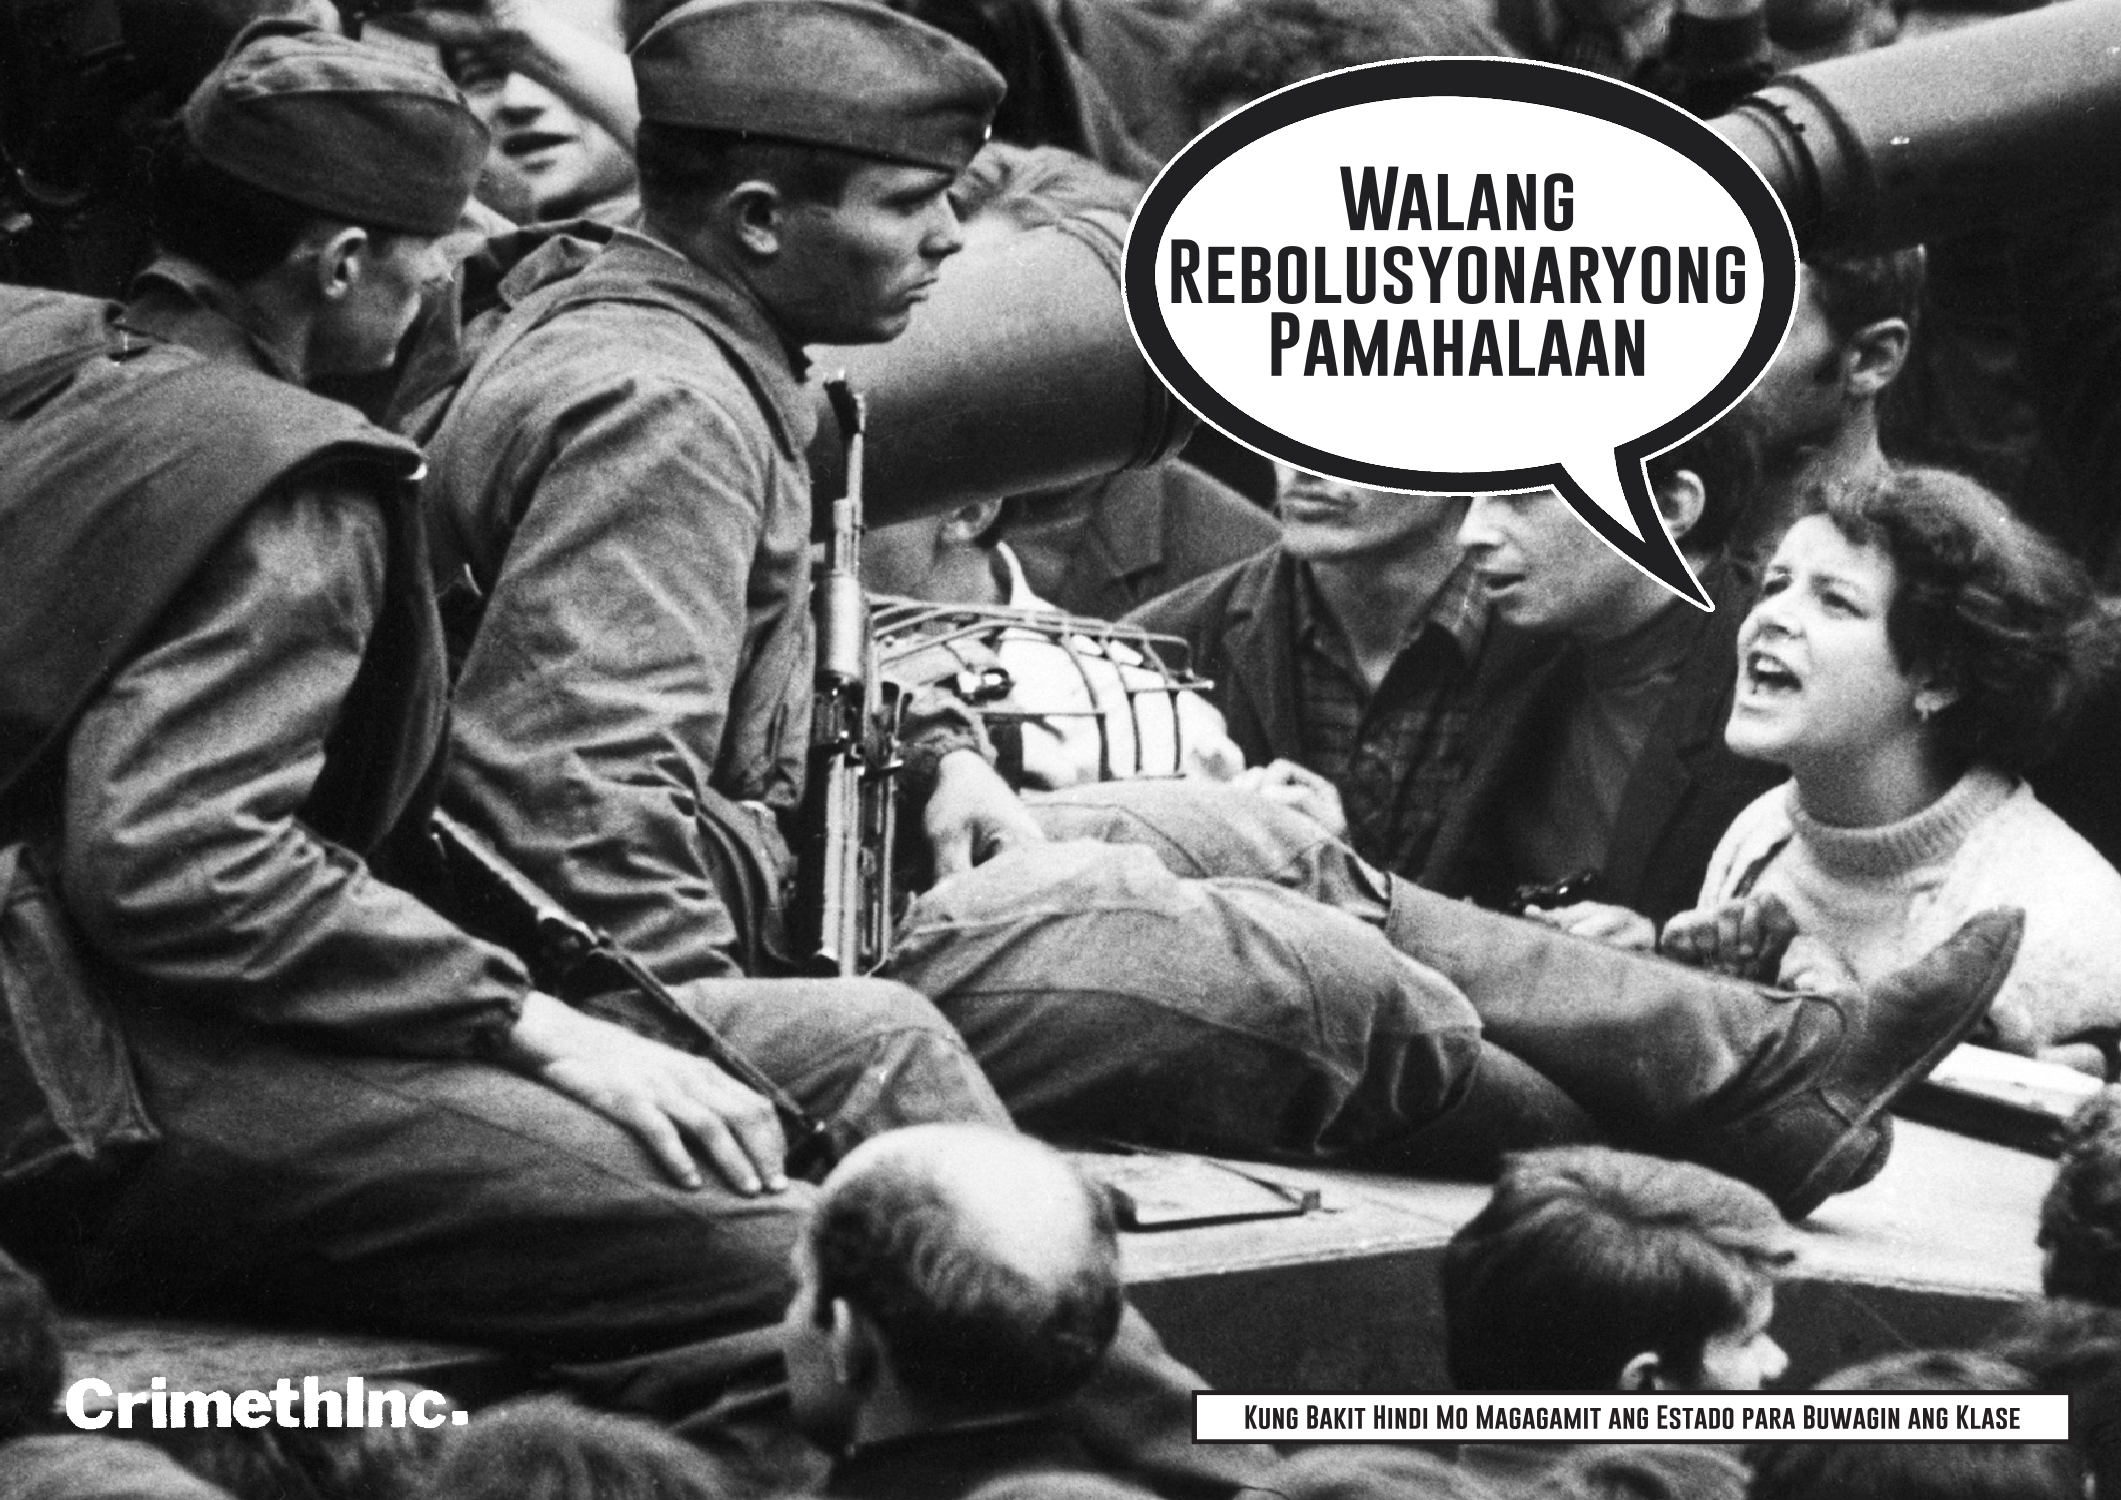 c-w-crimethinc-walang-rebolusyonaryong-pamahalaan-1.png